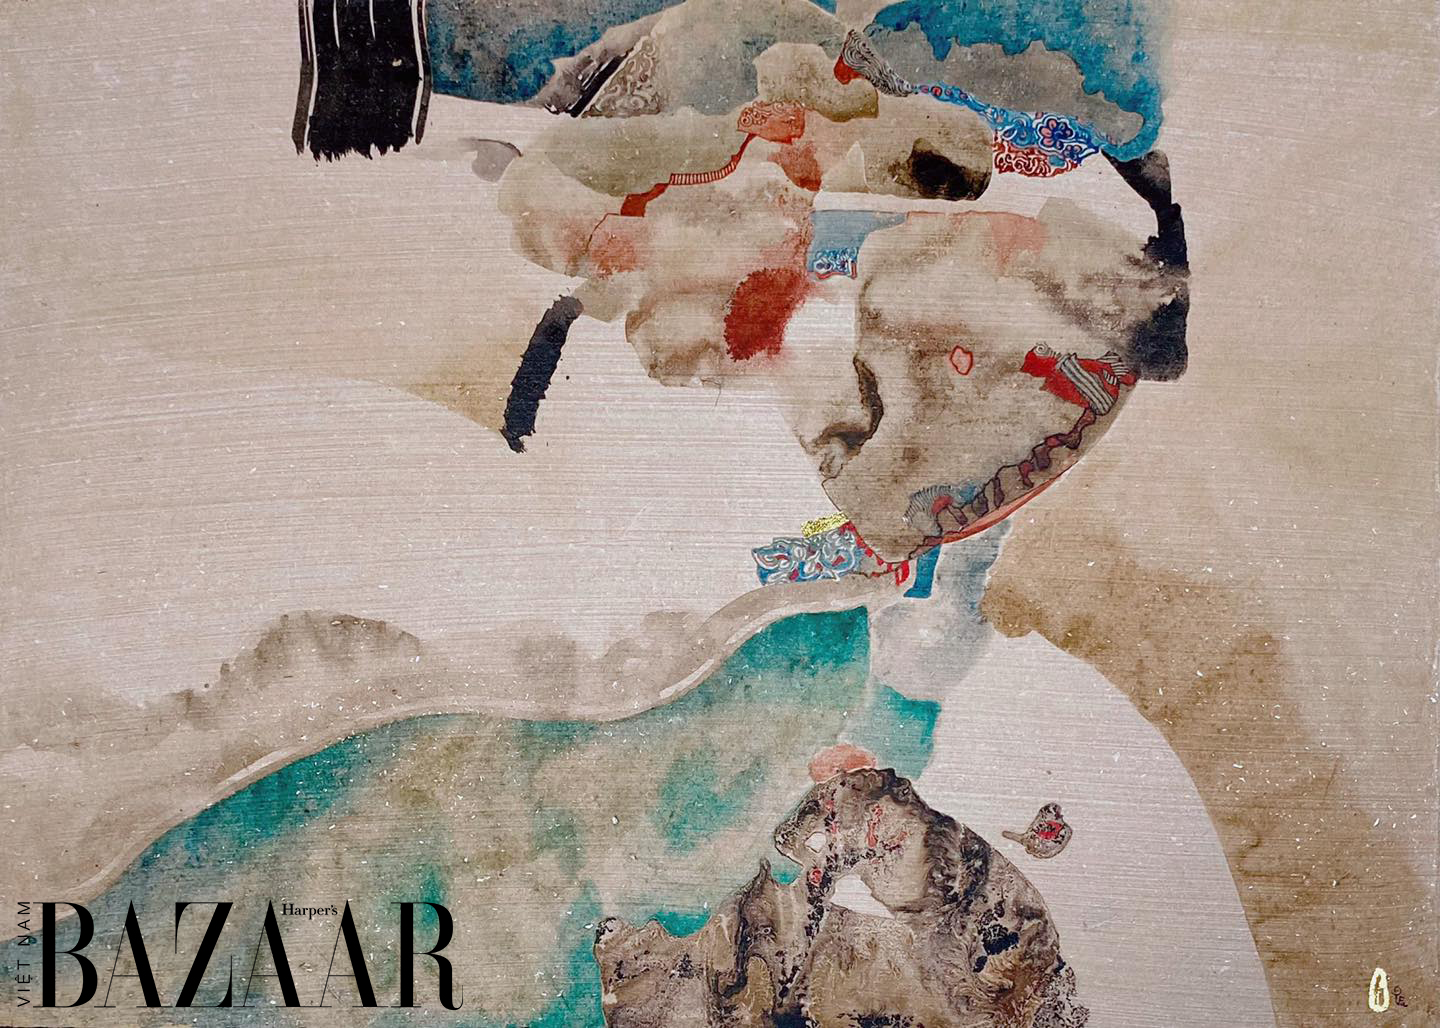 Triển lãm Harper's Bazaar_Mifa Lấp lánh từ giấy sò_04